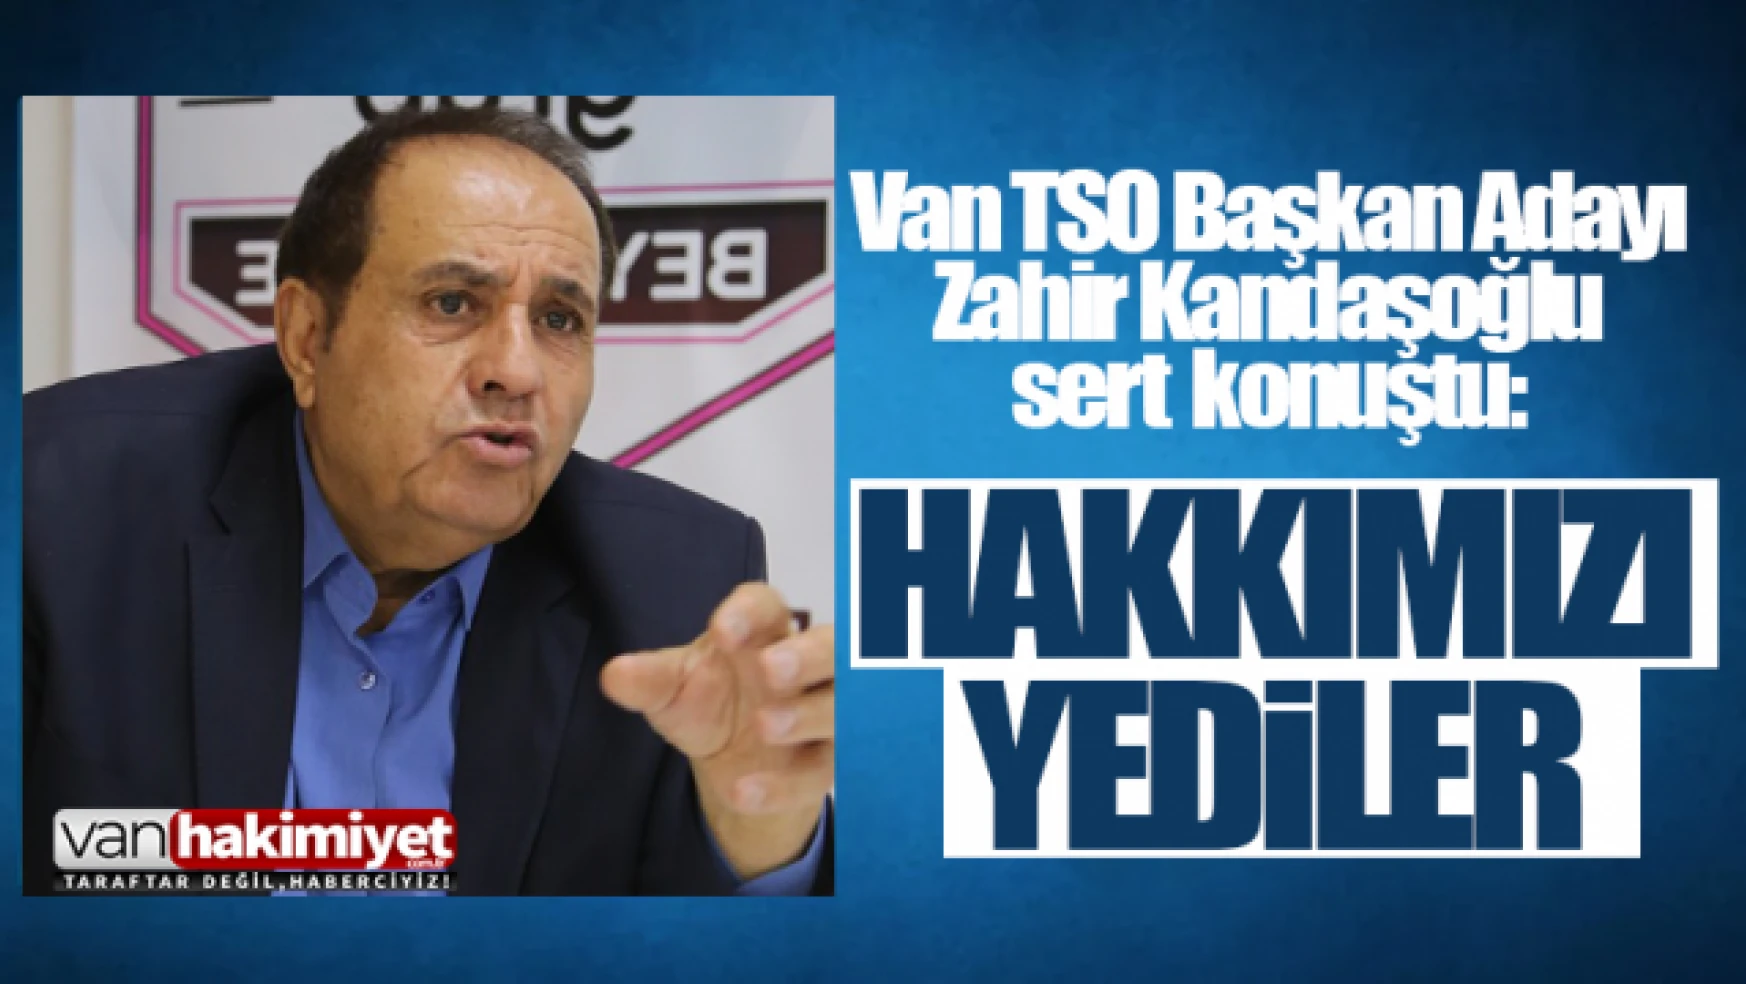 Başkan Zahir Kandaşoğlu, 'Hakkımızı yediler!'